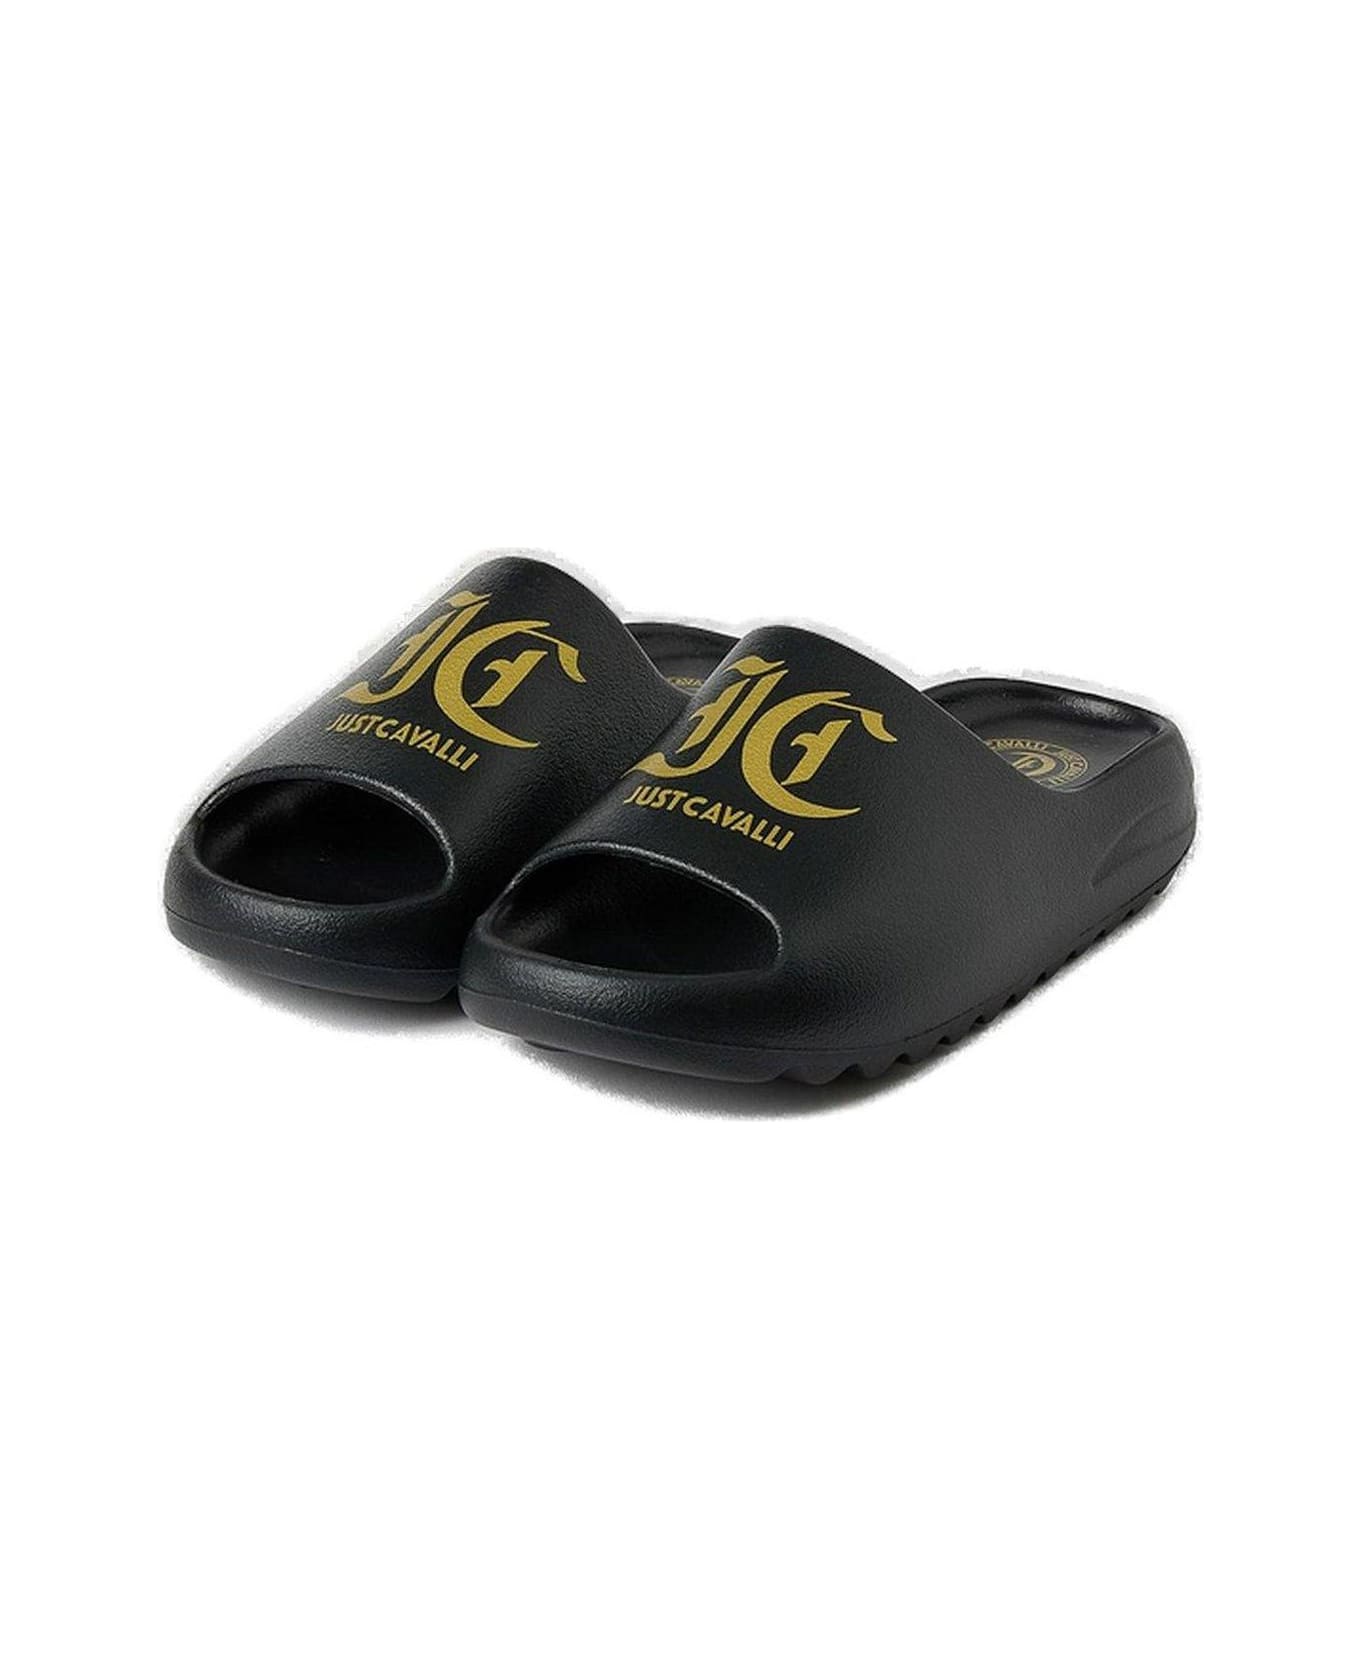 Just Cavalli Logo Printed Slip-on Slides - Black